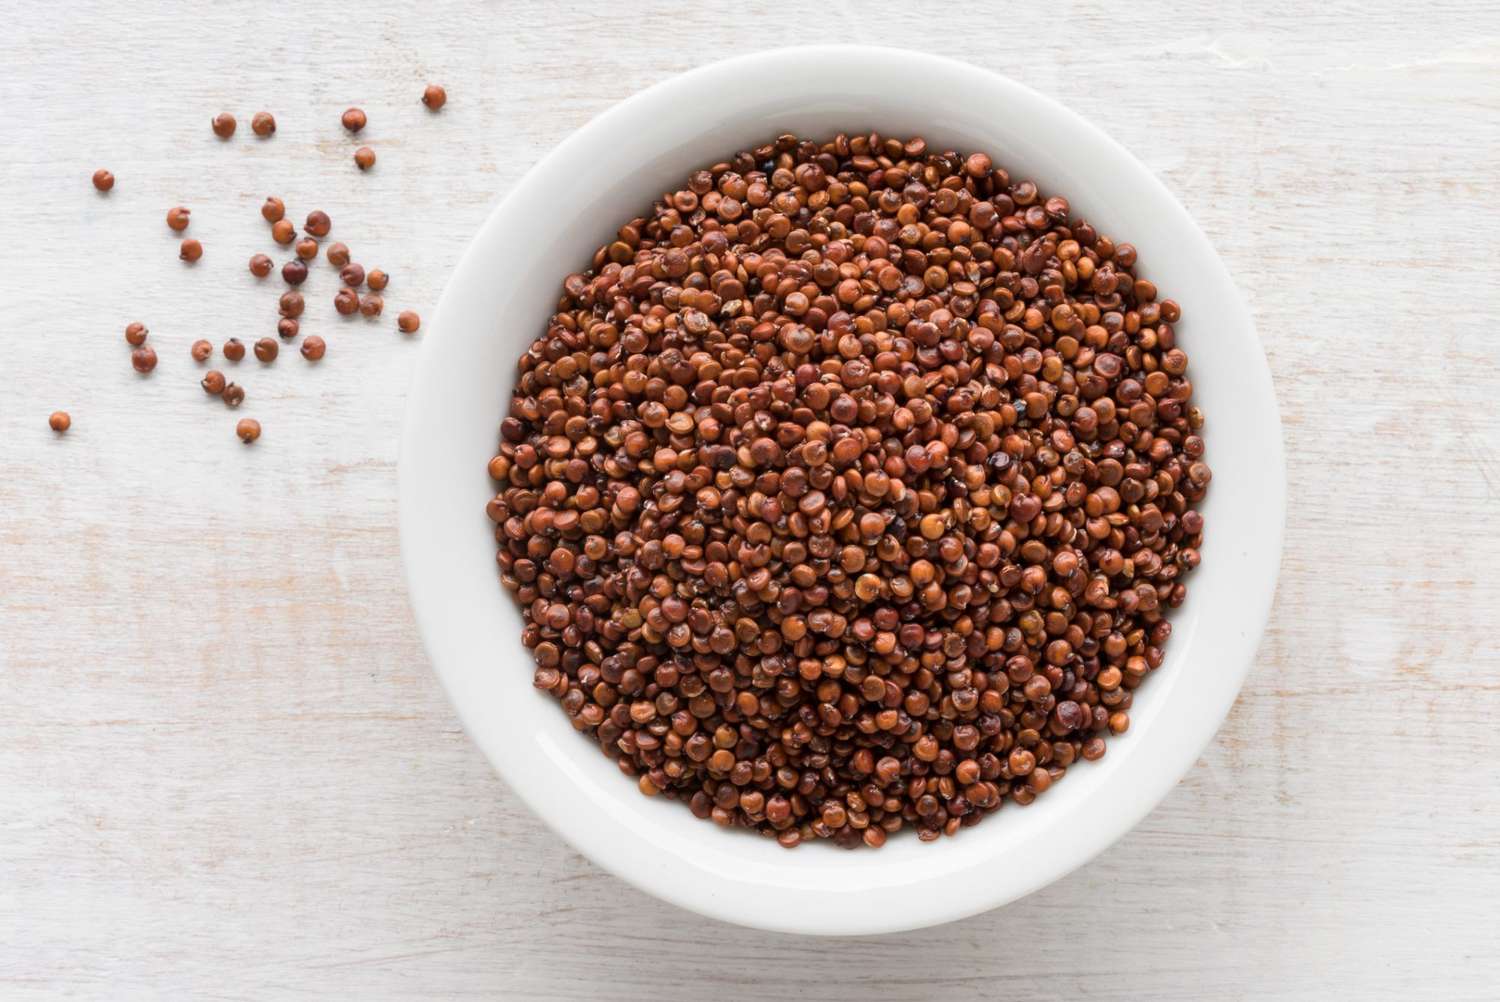 Quinoa in a Bowl